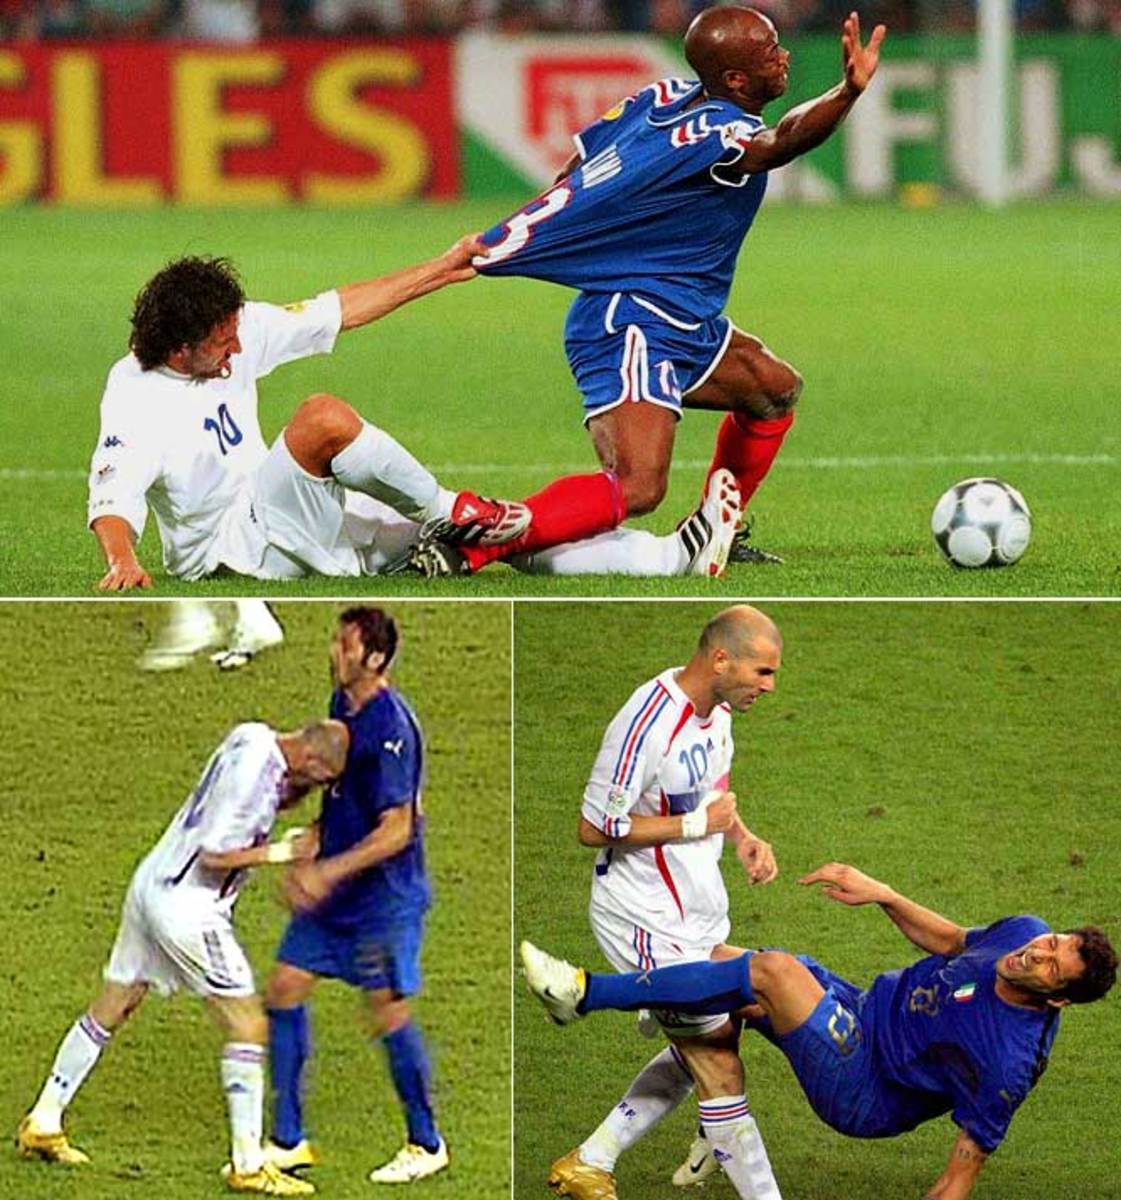 France vs. Italy